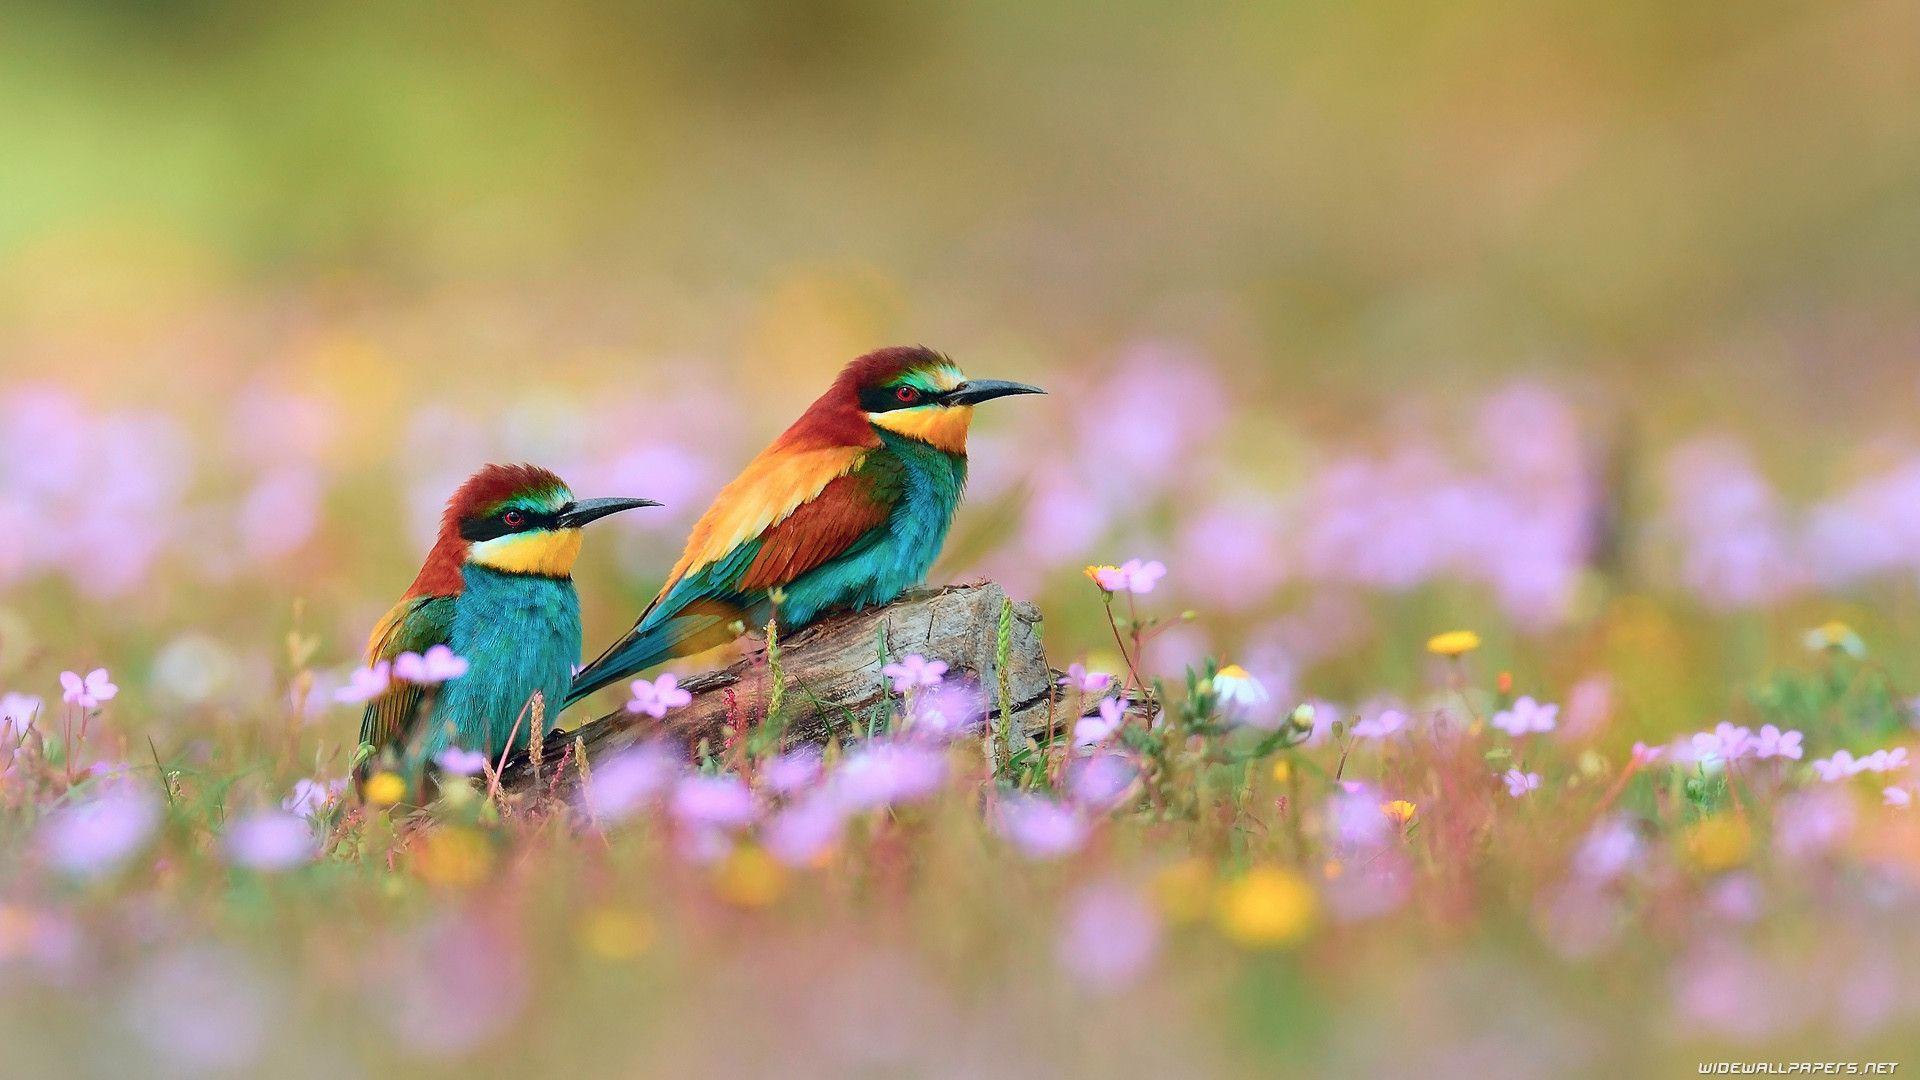 Chim: Những chú chim với đôi cánh rộng mênh mông, bay bổng giữa không trung sẽ khiến bạn cảm thấy nhẹ nhàng và tuyệt vời. Hãy chiêm ngưỡng khoảnh khắc đẹp của những chú chim này và cảm nhận sự tự do và thanh thản trong tâm hồn.